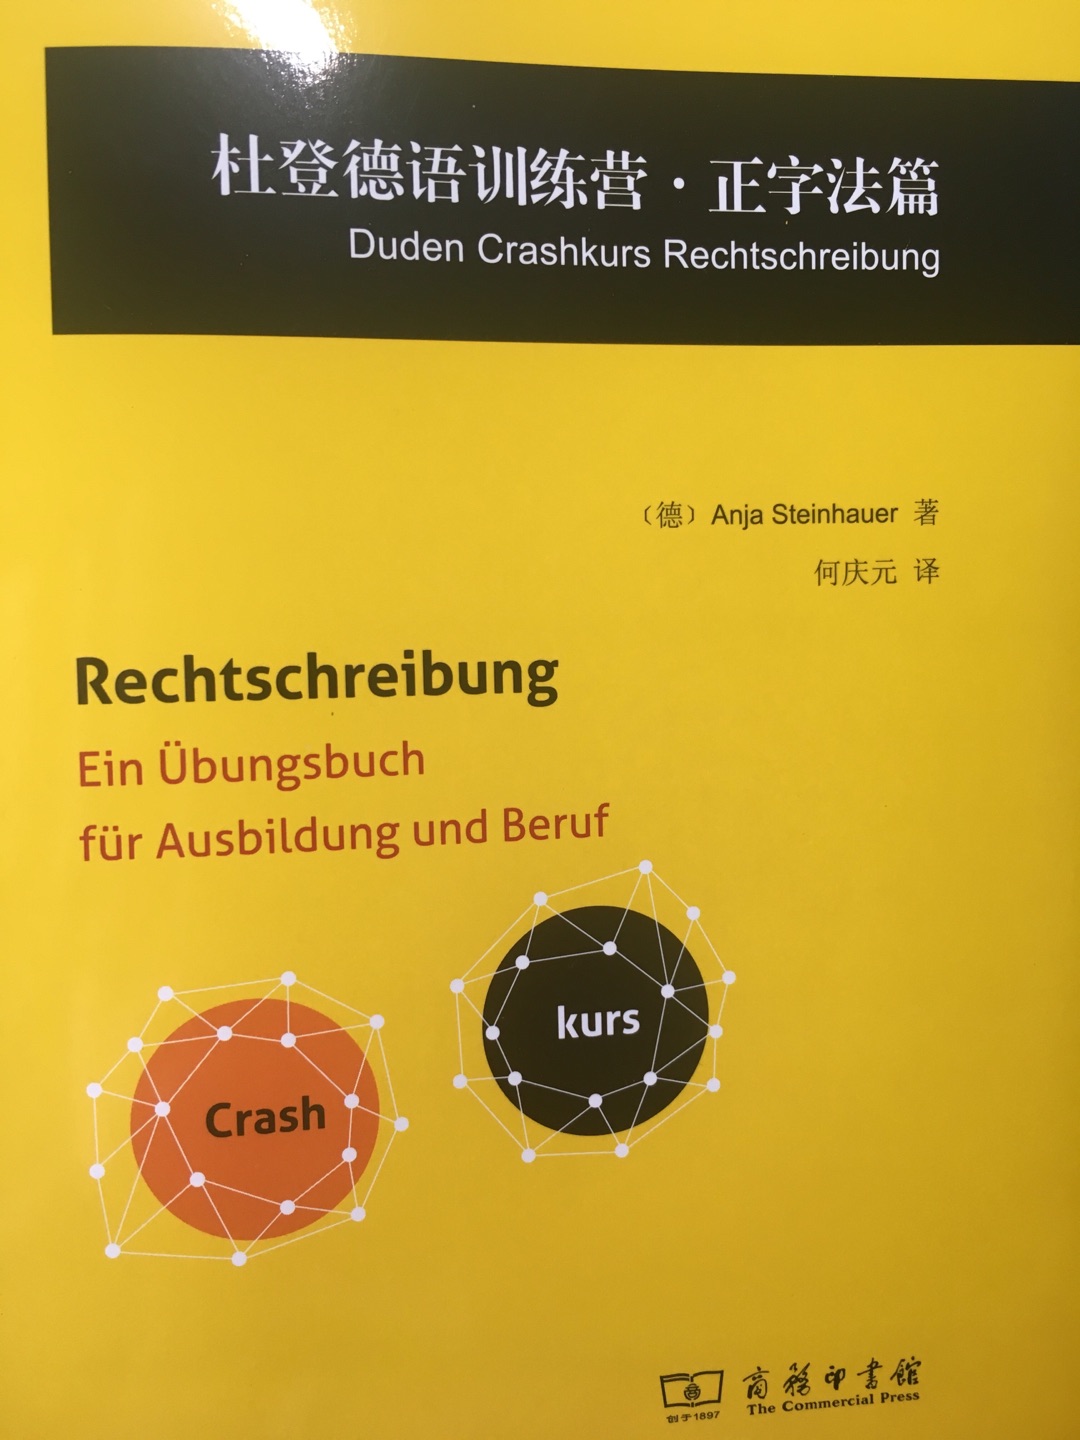 薄薄的一本，但是内容很丰富，有中德对照的讲解和对应的练习，答案也有。适合课外补充一下知识。这本书在德国卖的贵上天……